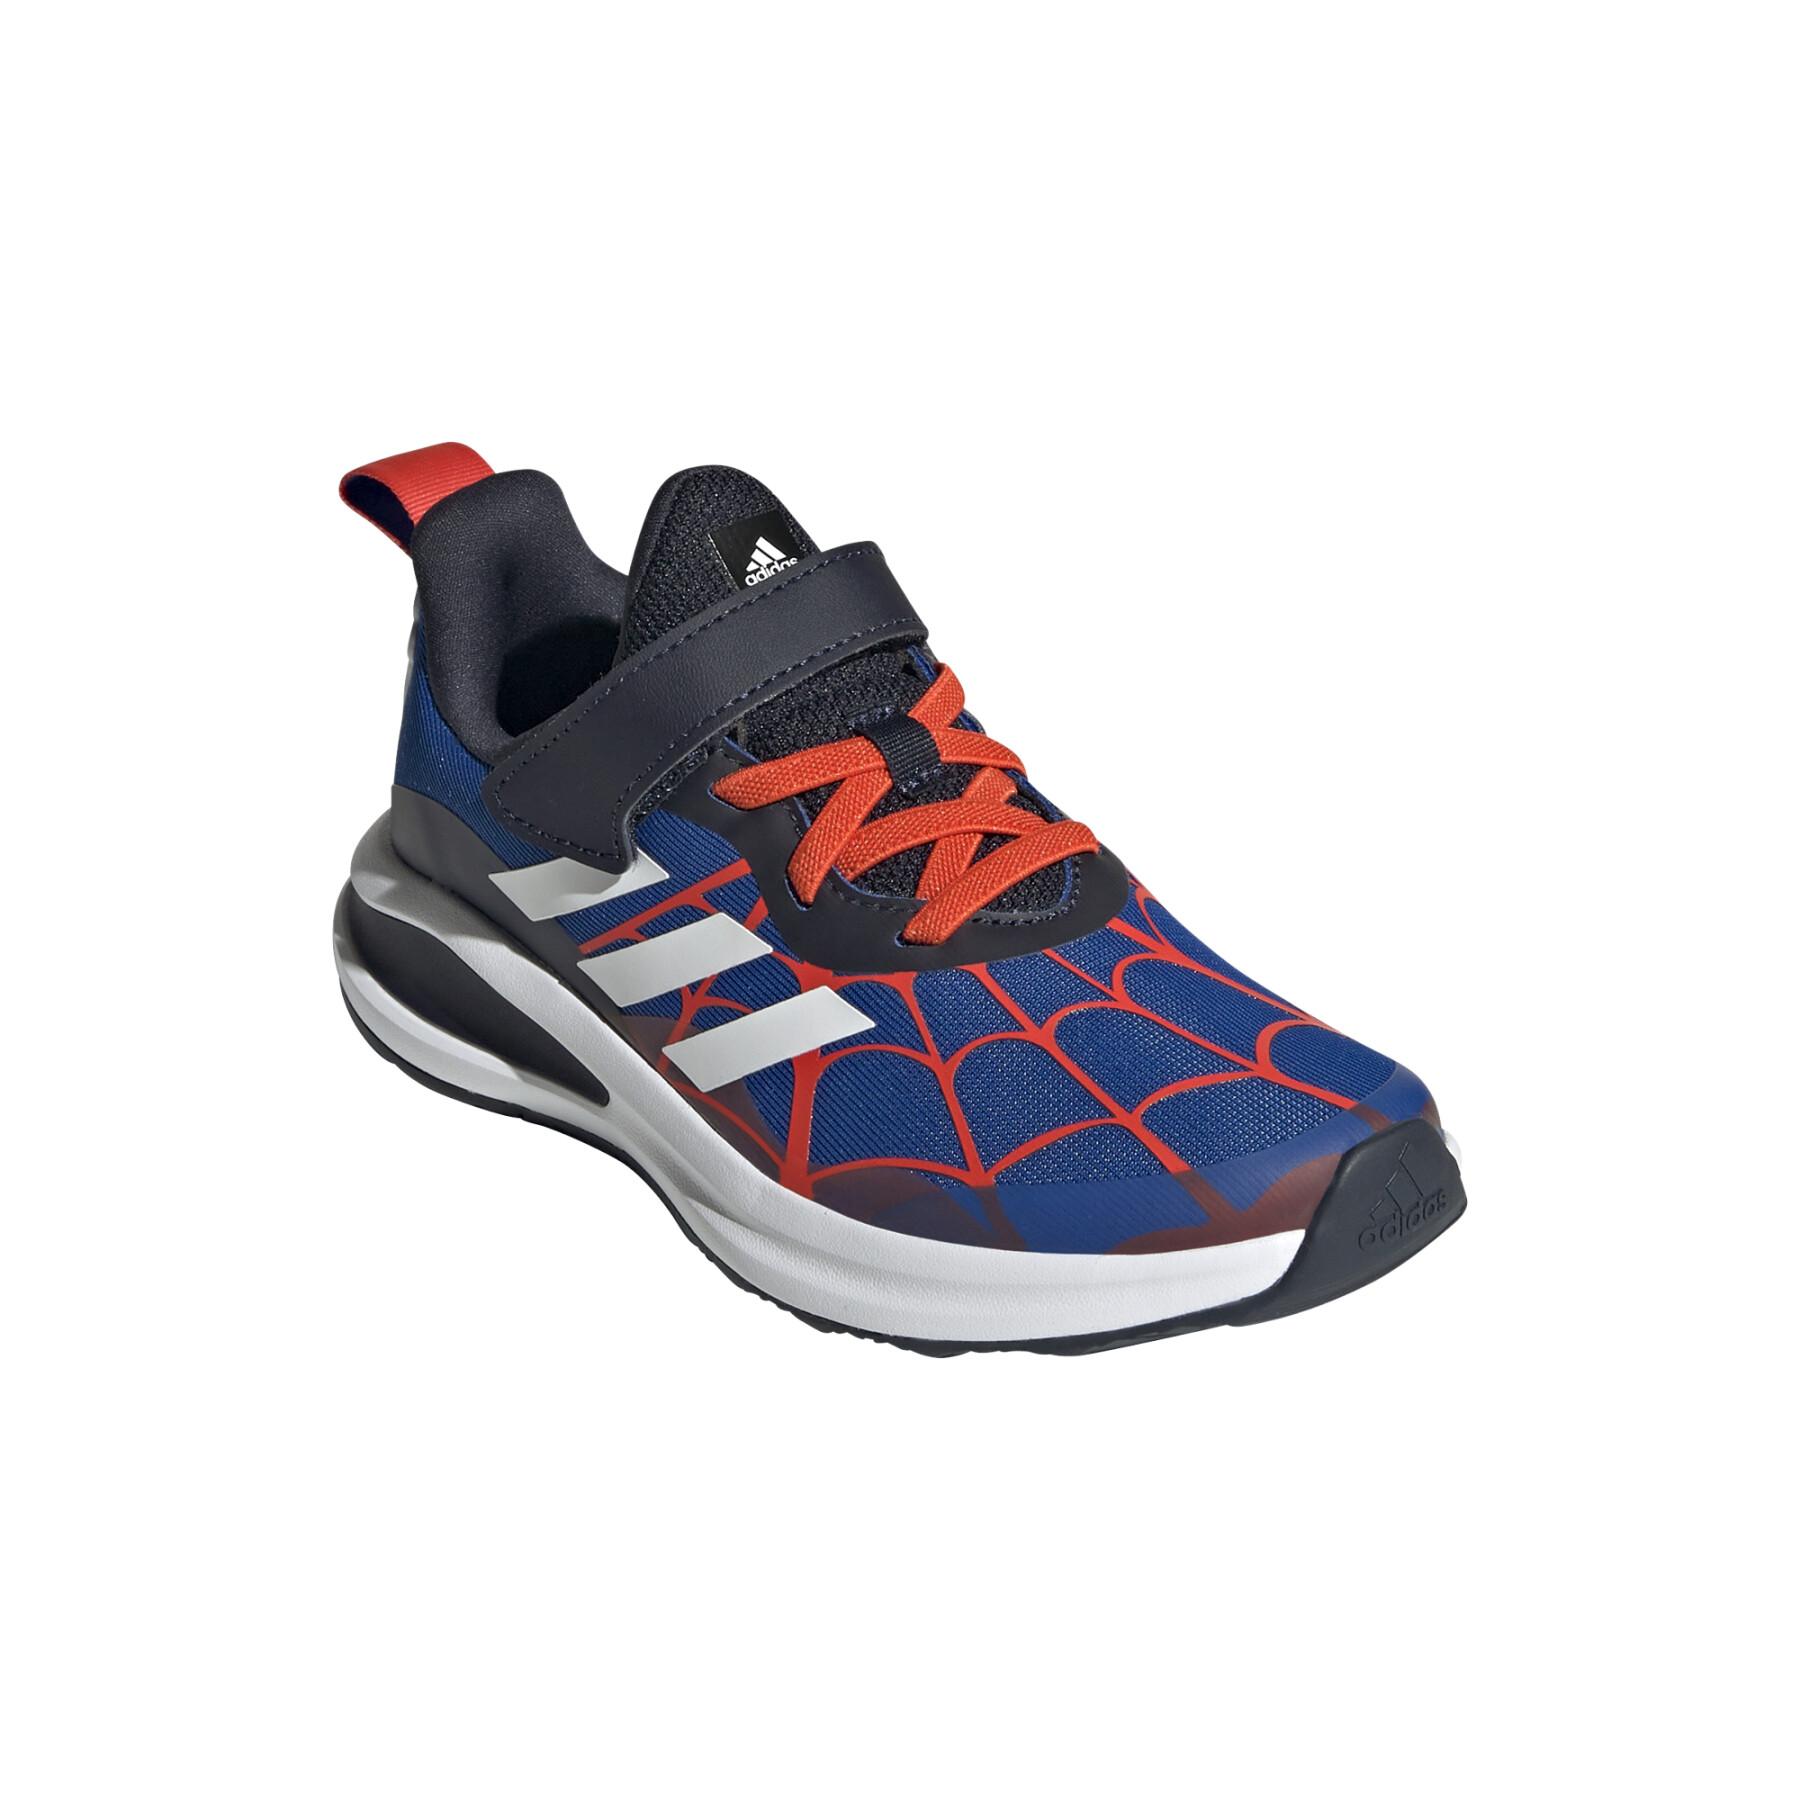 Children's shoes adidas Marvel Spider-Man Fortarun